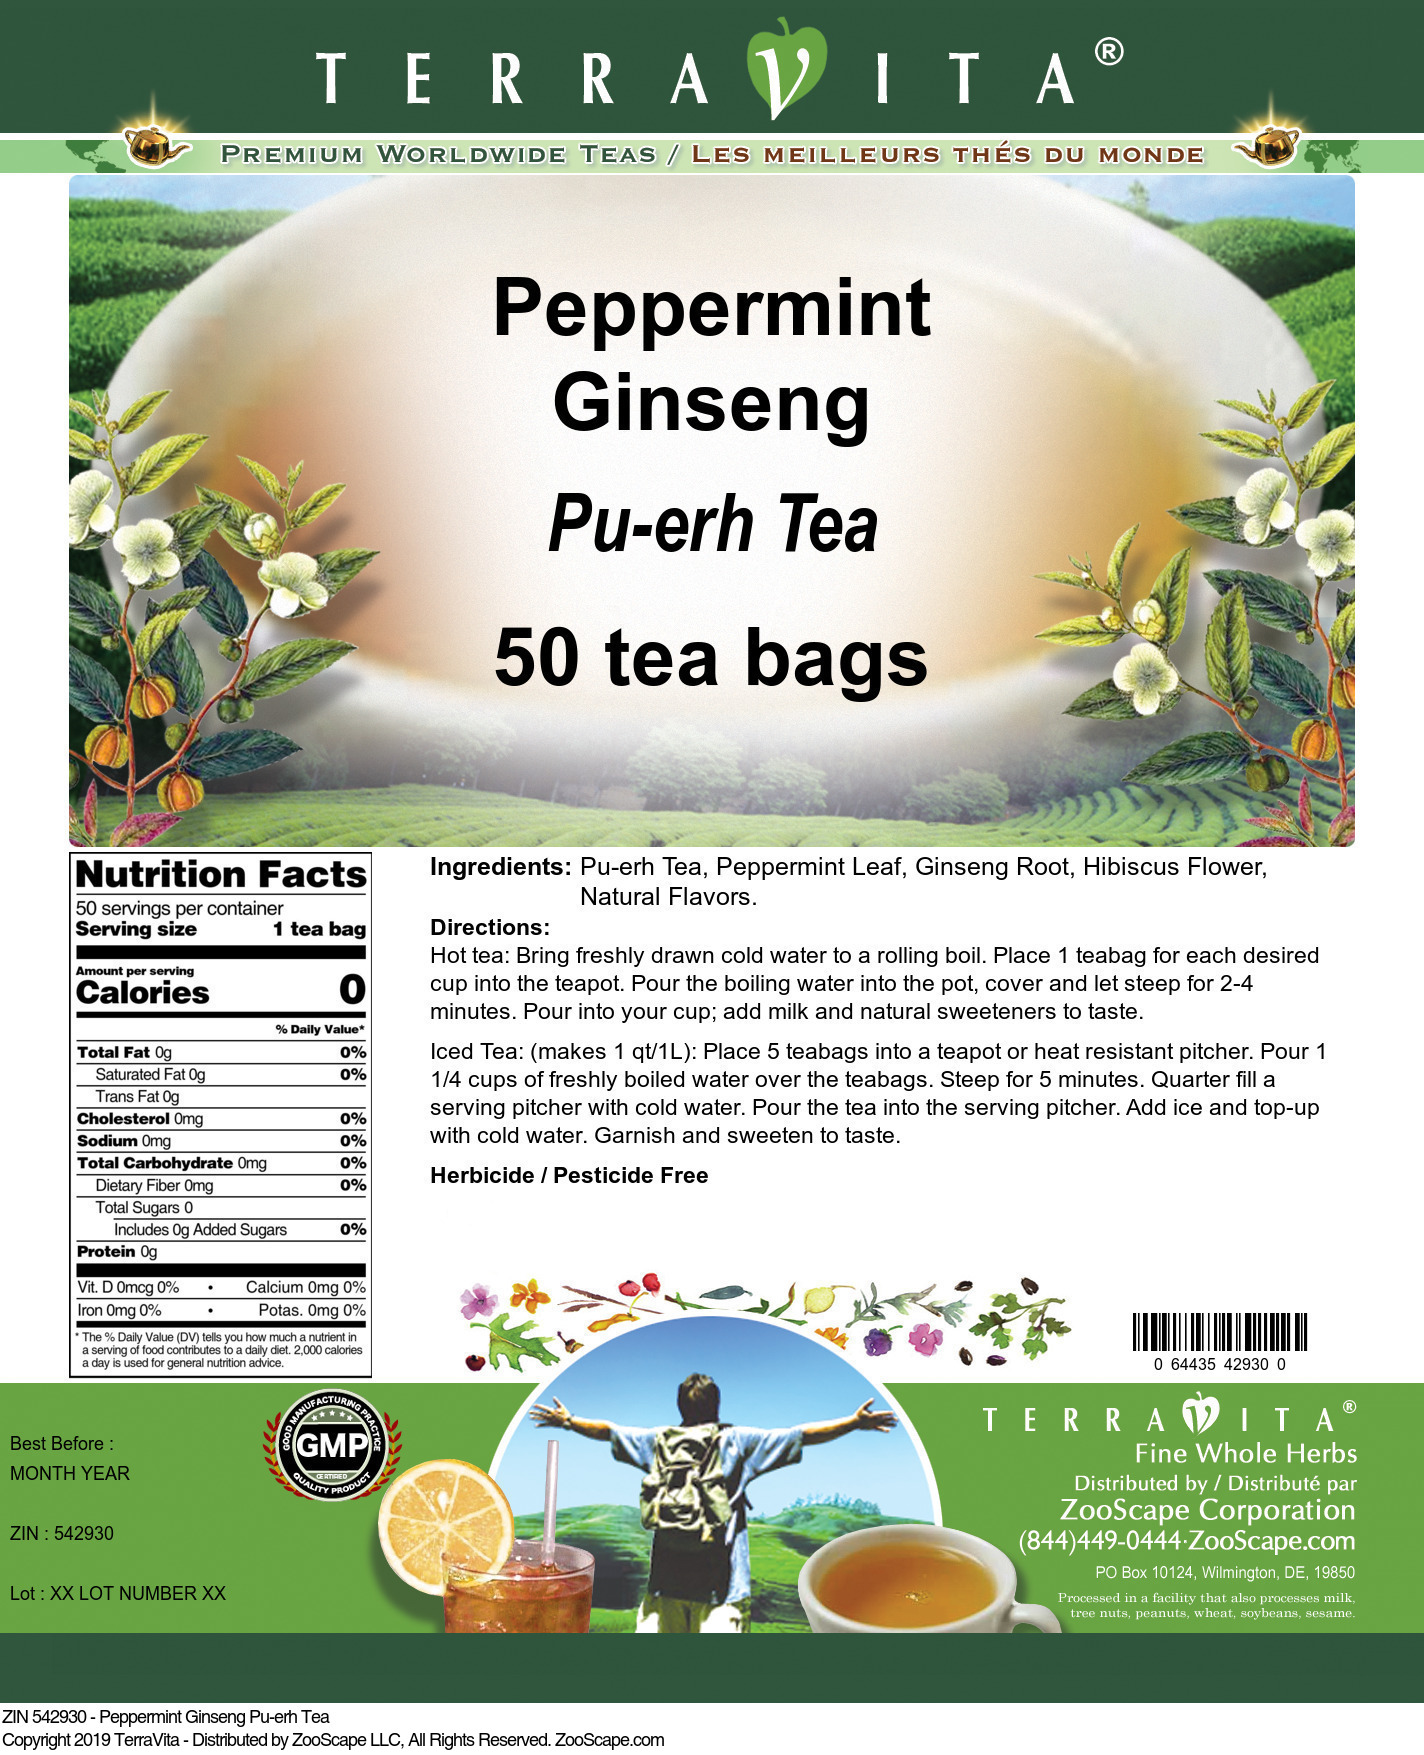 Peppermint Ginseng Pu-erh Tea - Label